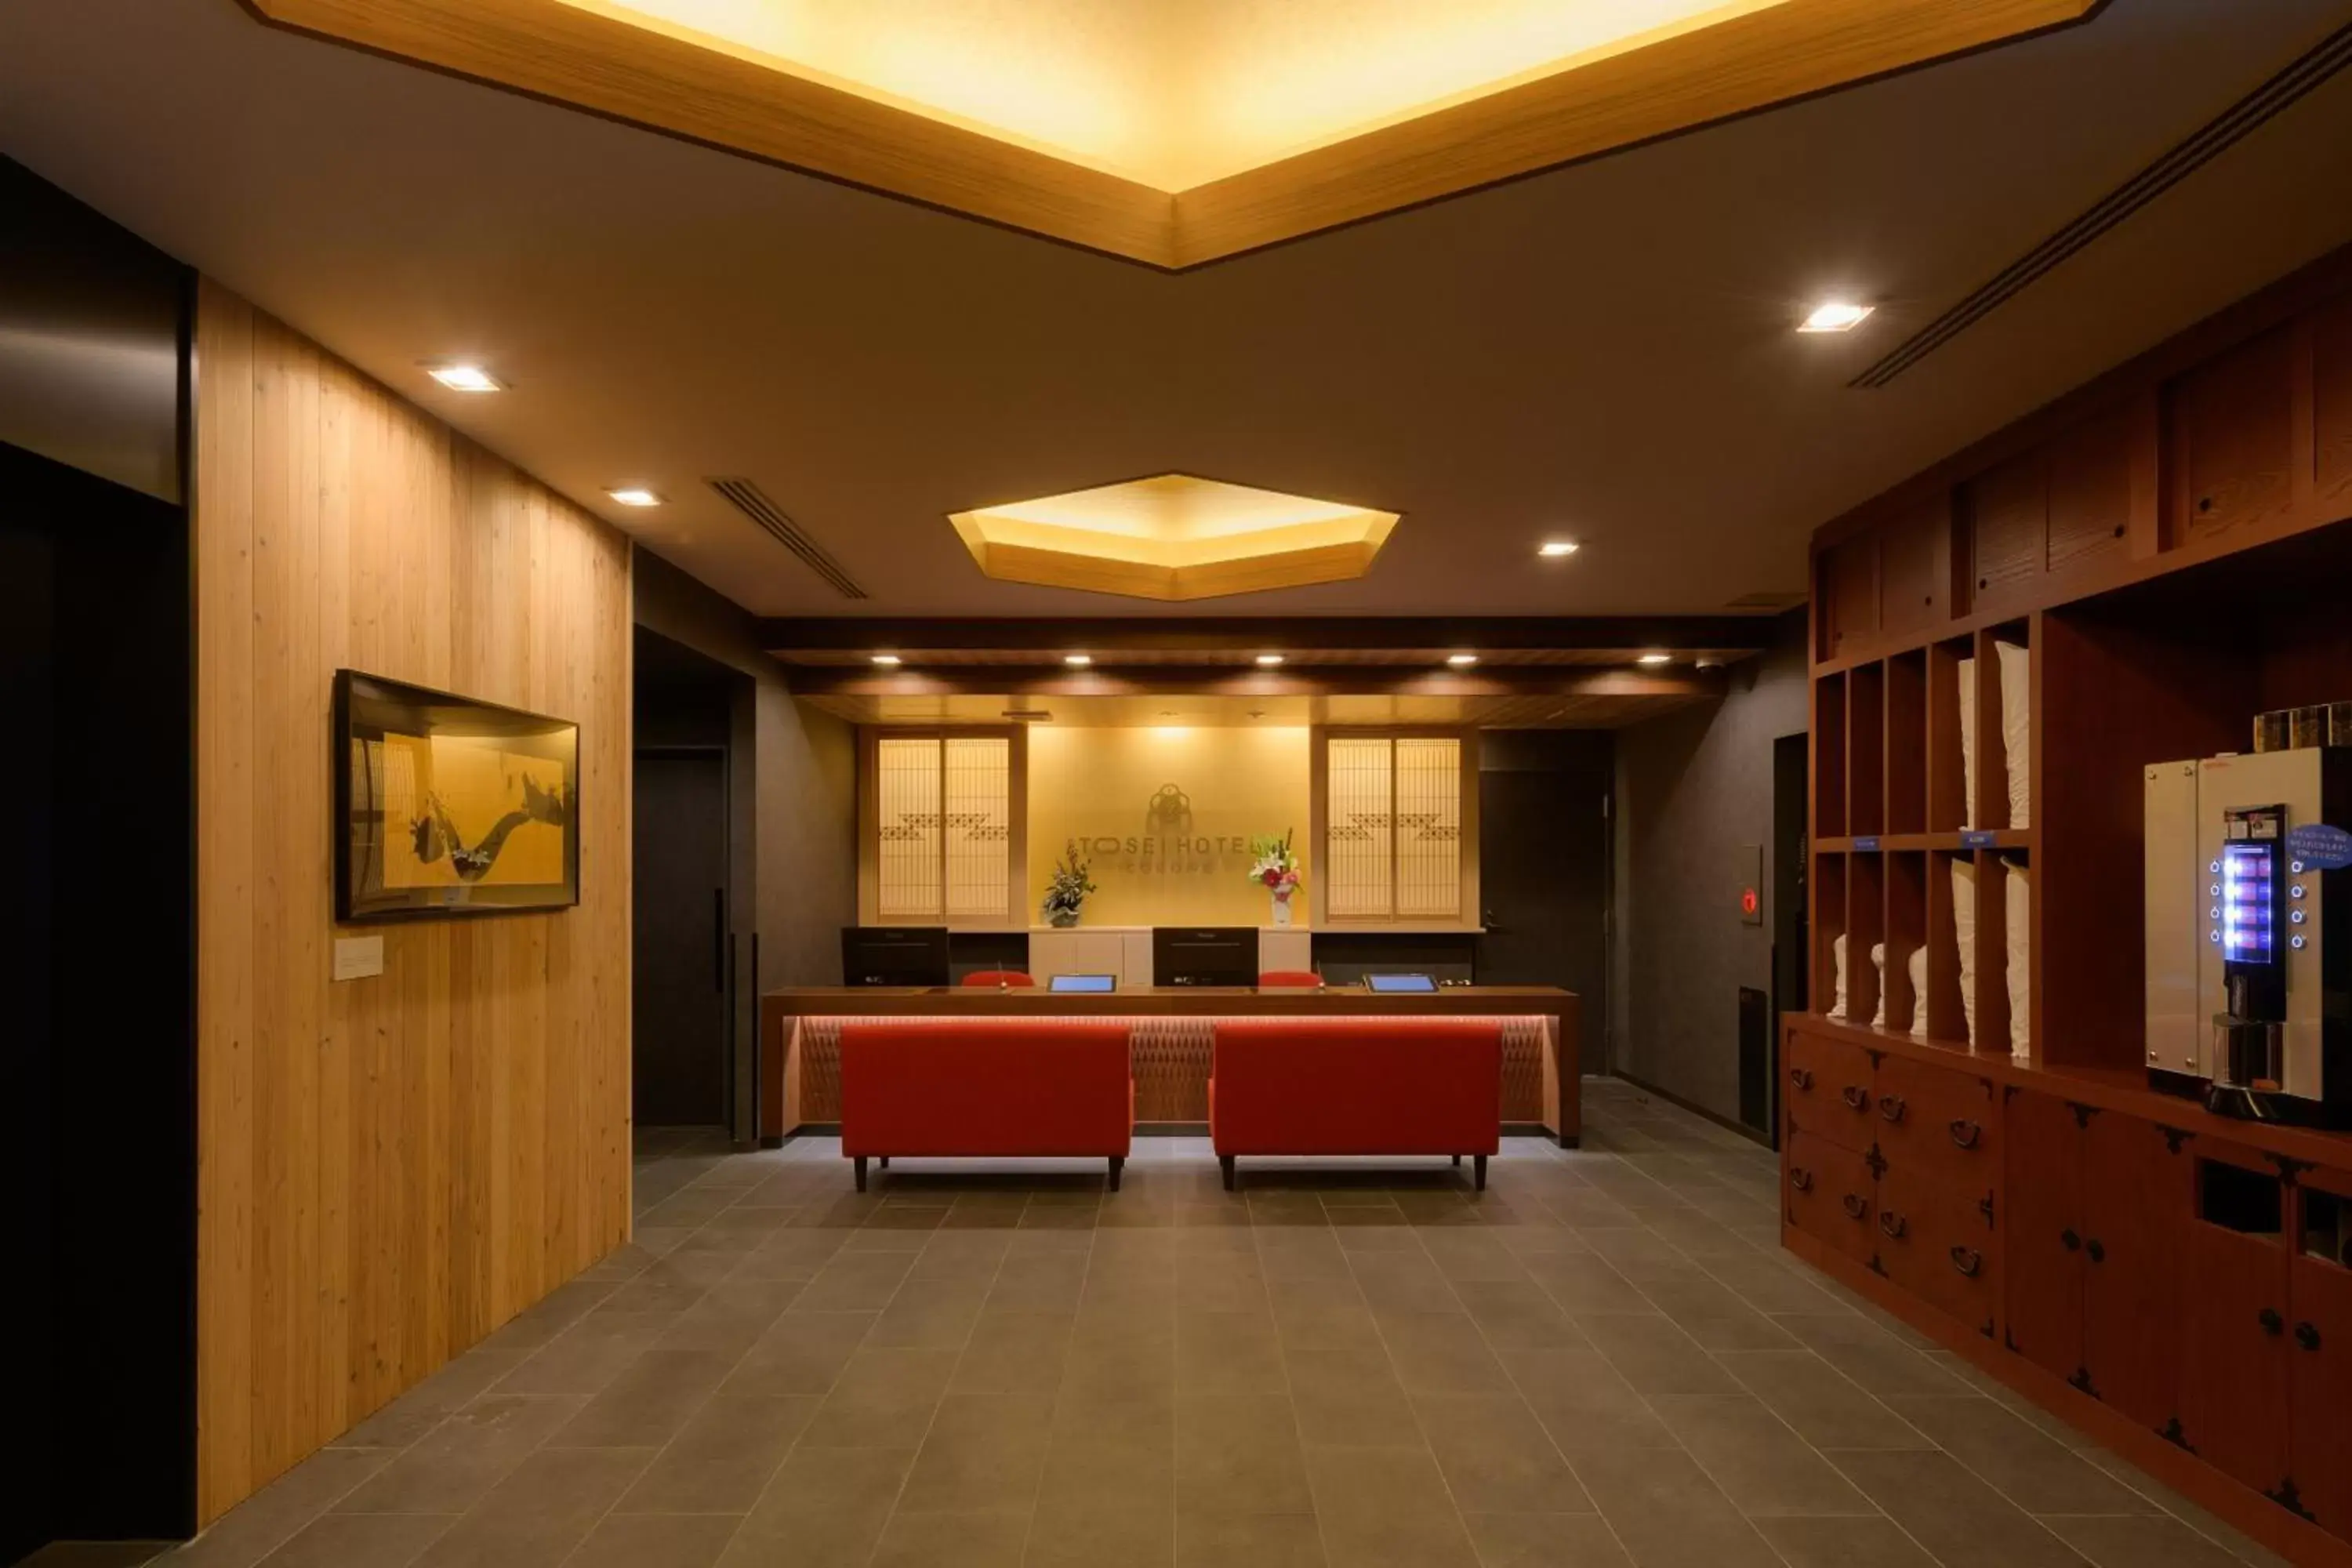 Lobby or reception in Tosei Hotel Cocone Asakusa